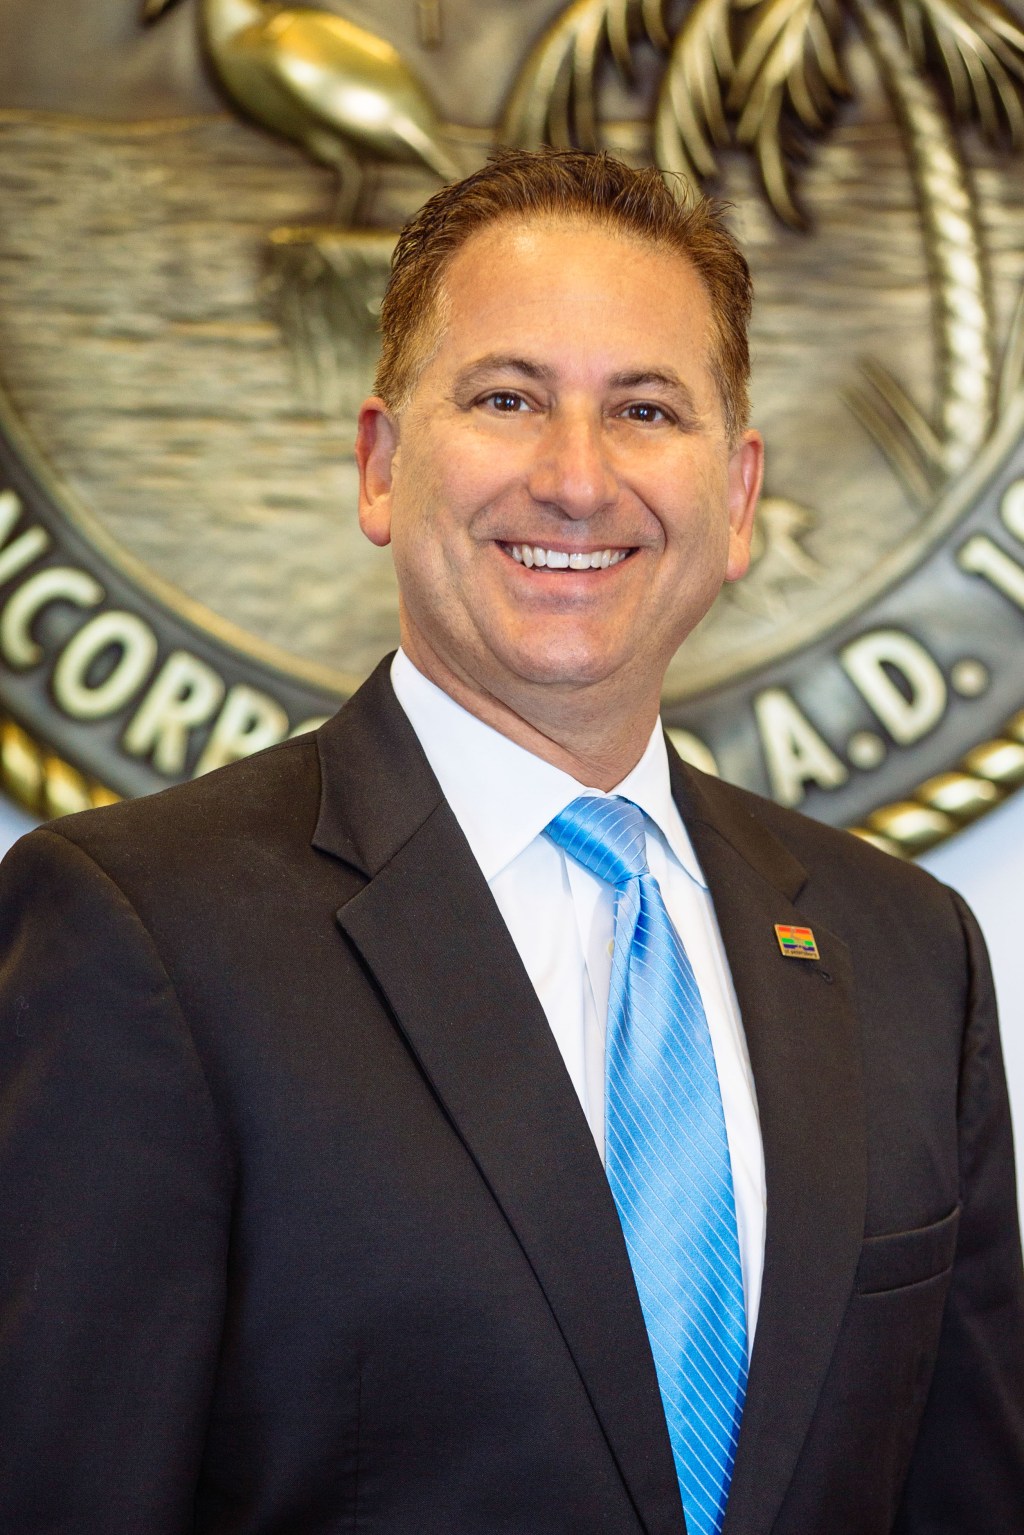 Rick Kriseman fue investido como el 53 alcalde de St. Petersburg, Florida el 2 de enero de 2014.